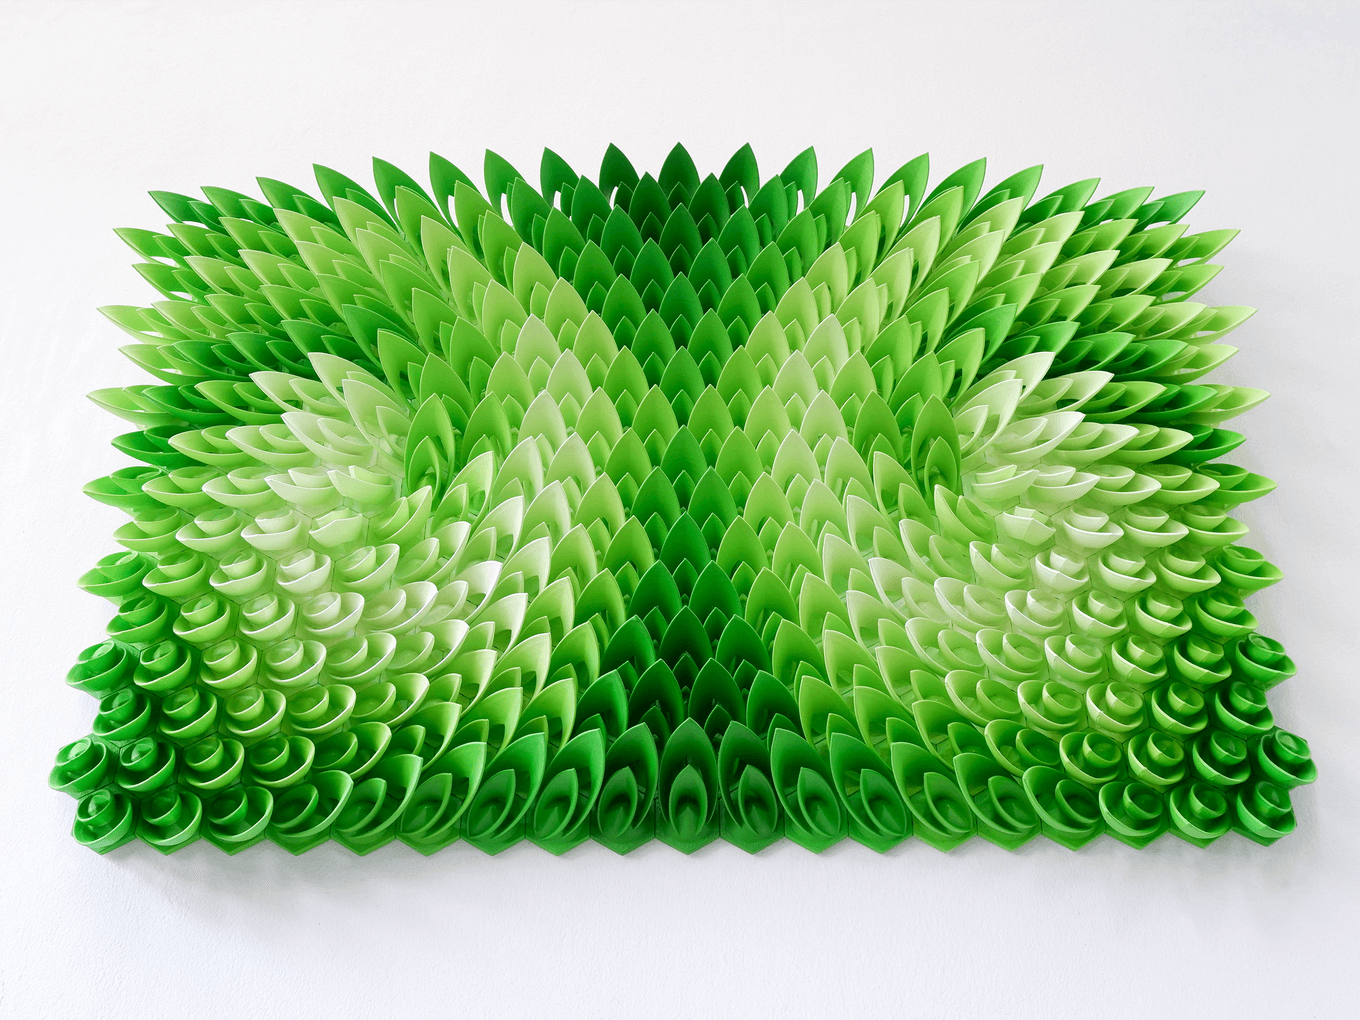 Swirling Ivy | Herschel Shapiro | Modern Dimensional 3D Wall Art Mosaic